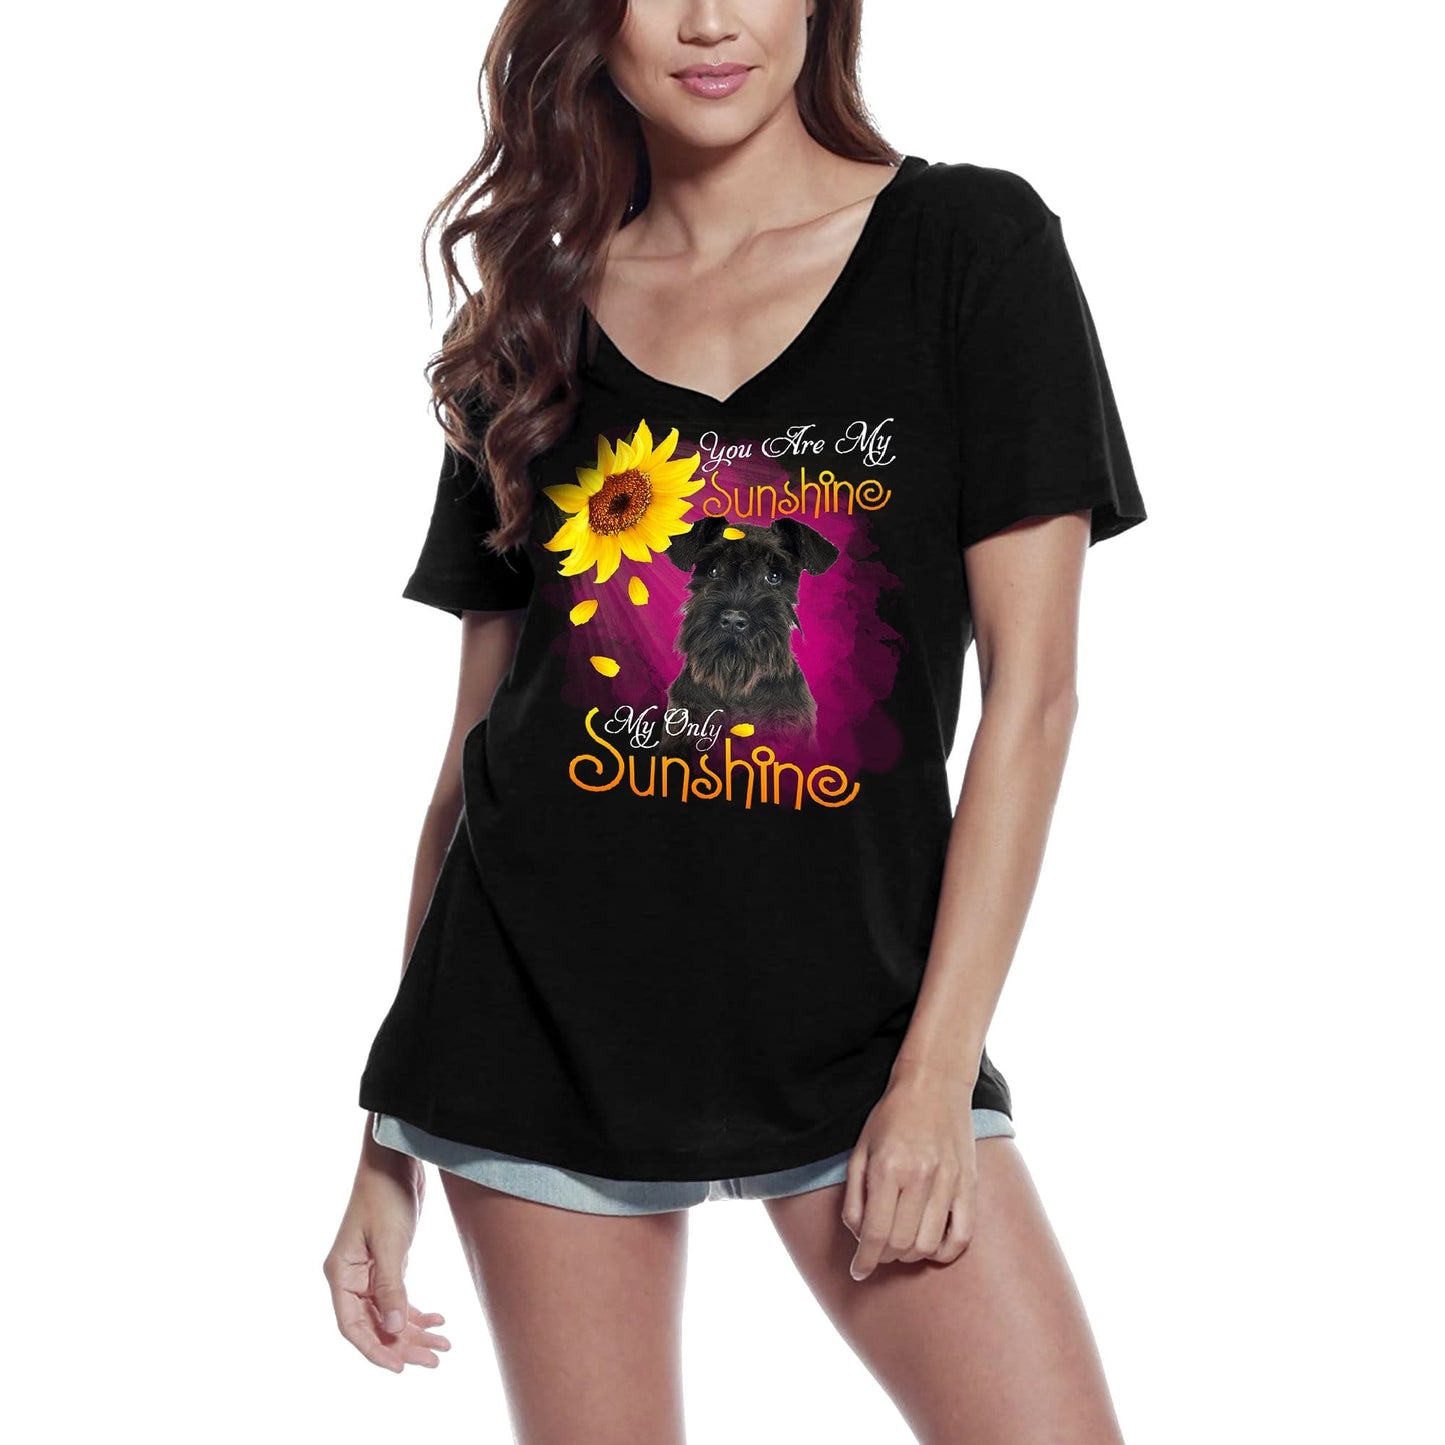 ULTRABASIC Women's V-Neck T-Shirt My Only Sunshine - Schnauzer - Vintage Shirt